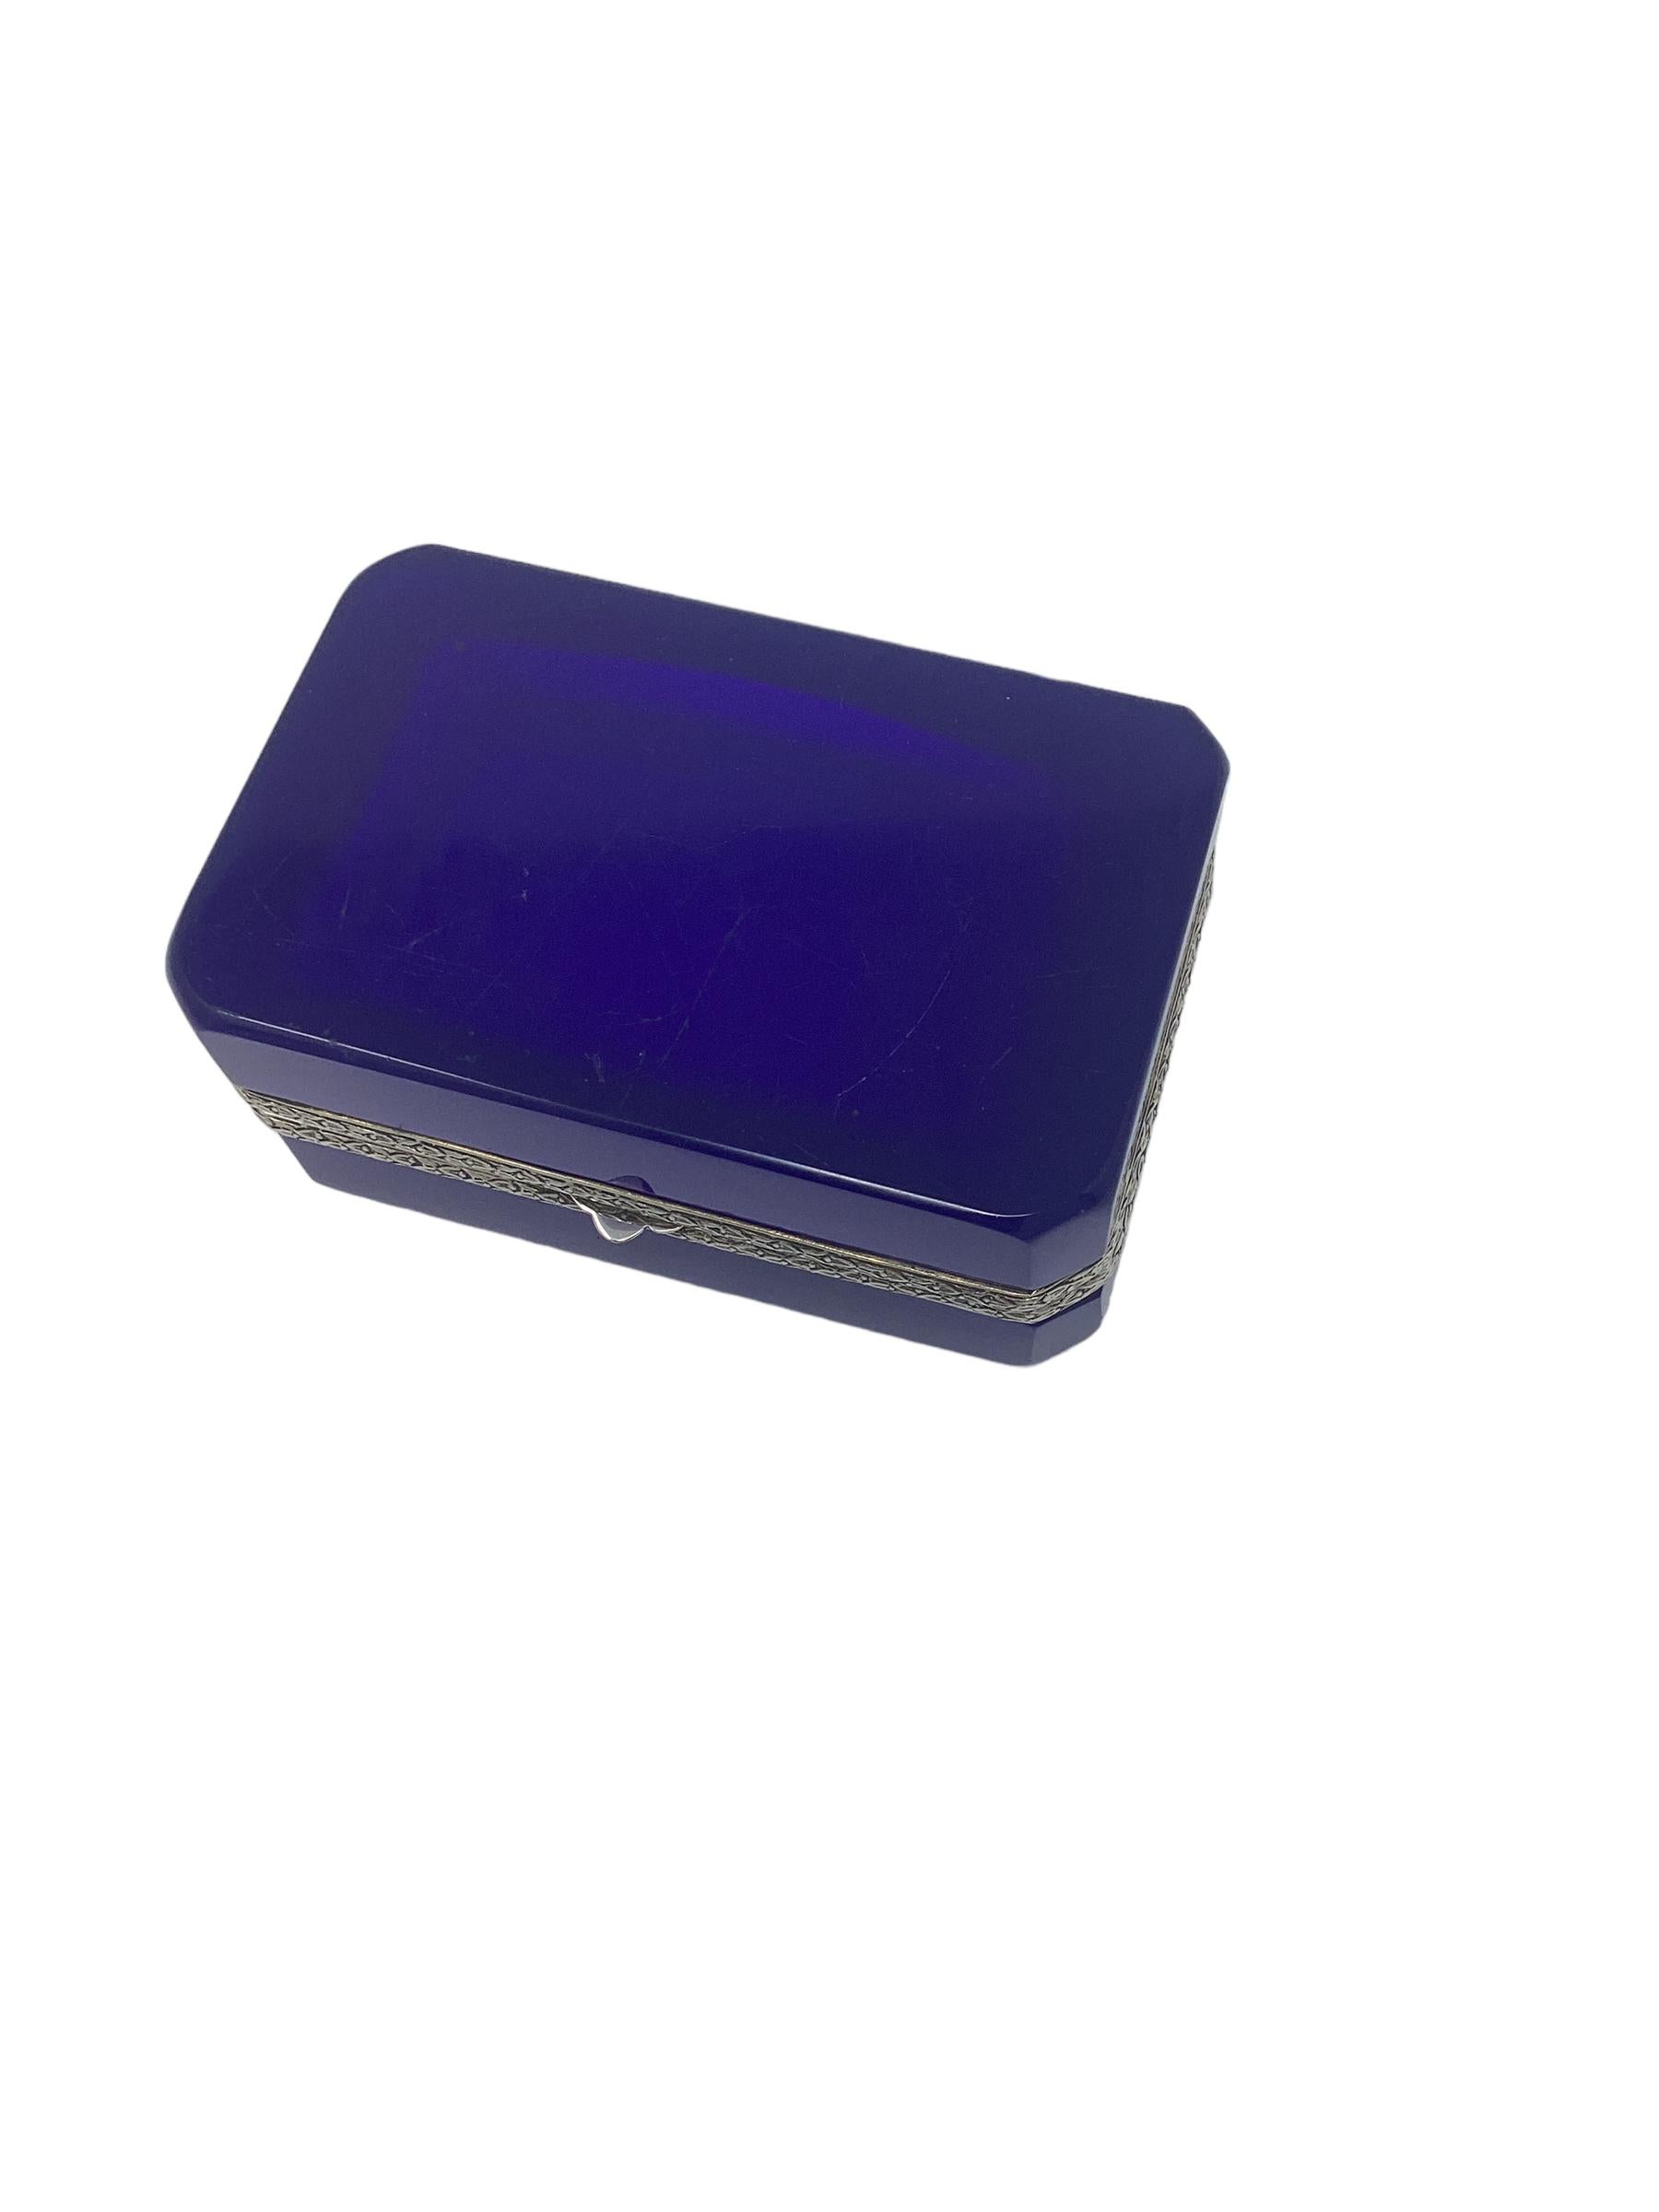 Boîte en opaline bleue française avec montures en métal argenté.